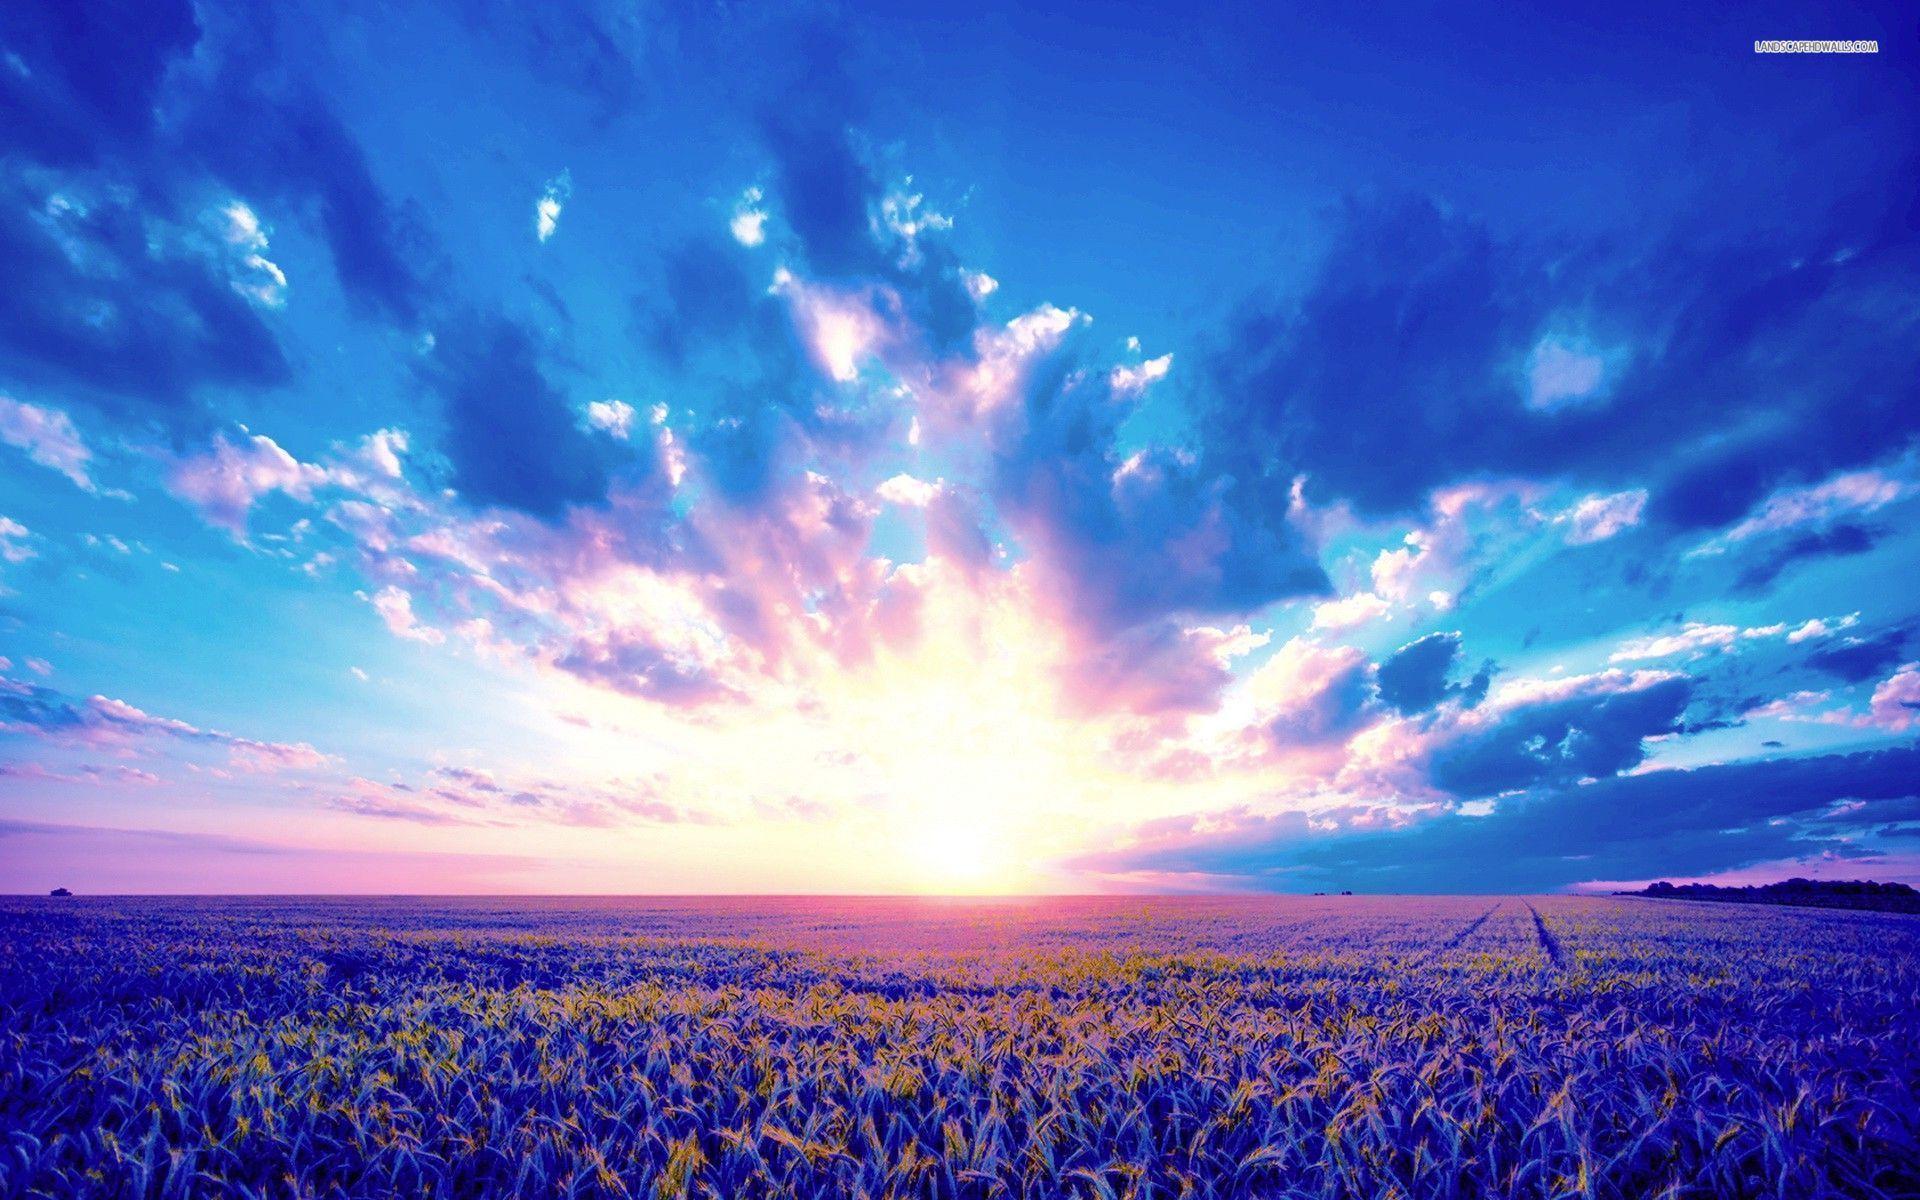 Wheat Field & Purple Sunrise wallpaper. Wheat Field & Purple